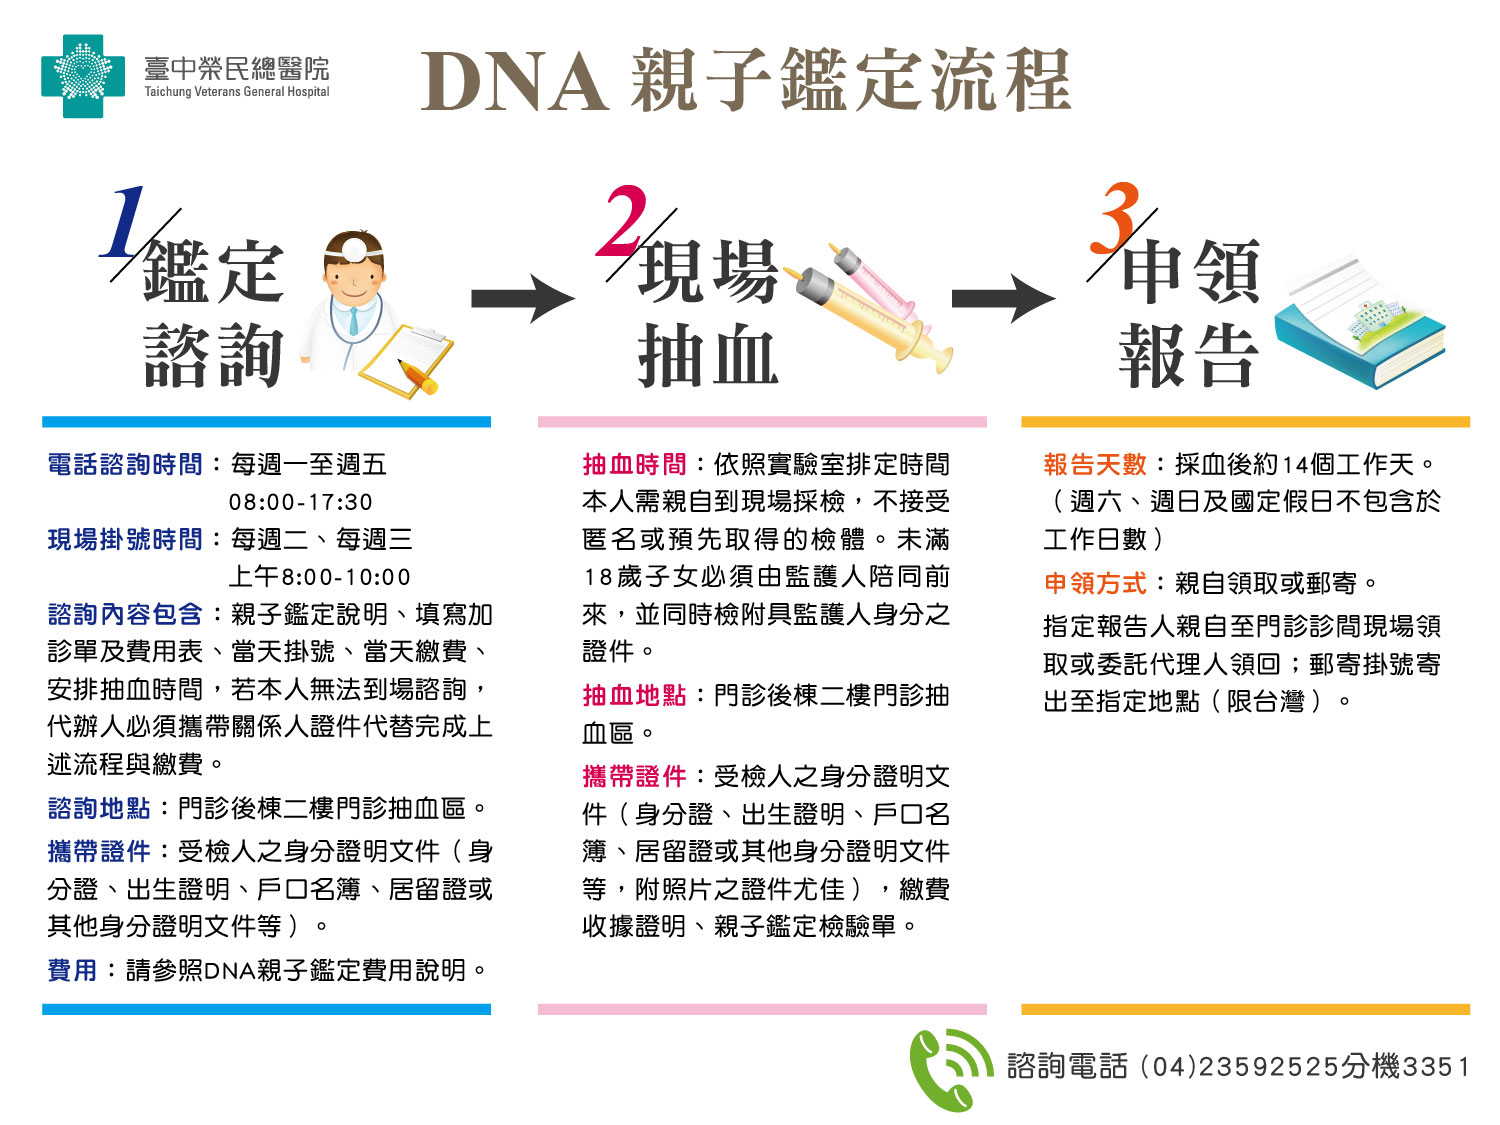 DNA親子鑑定流程示意圖